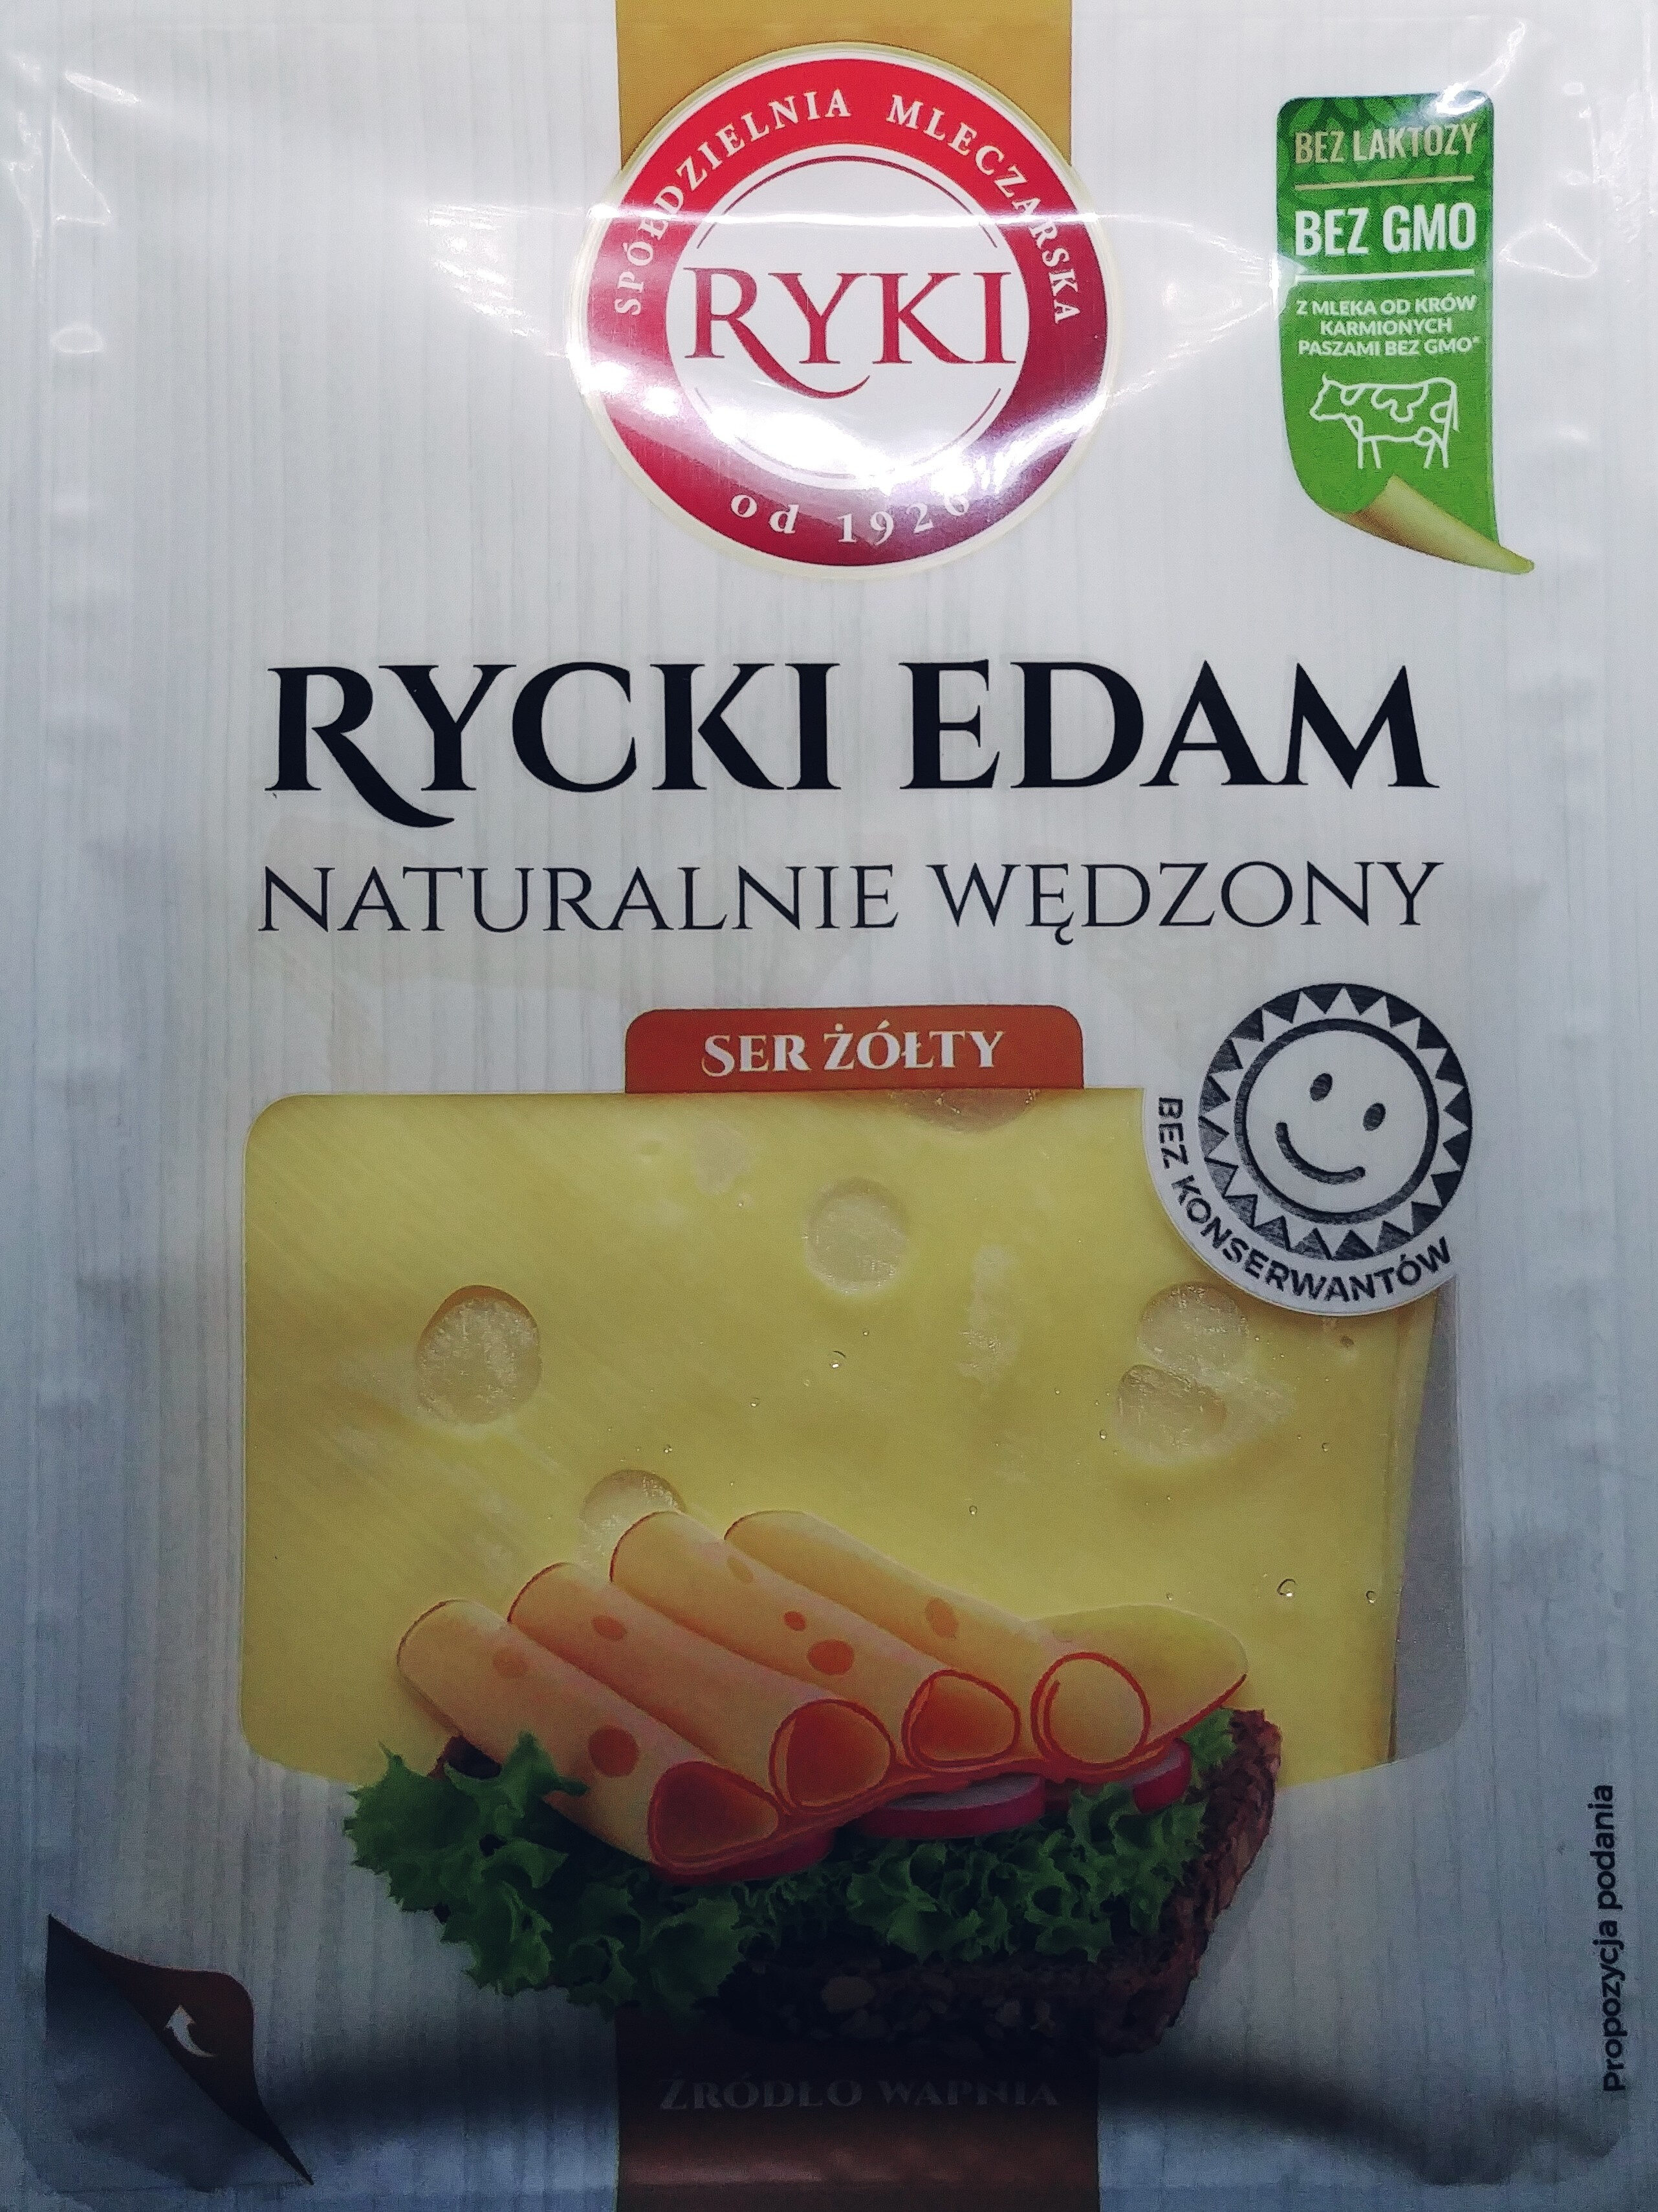 Ser Rycki Edam wędzony - Product - pl